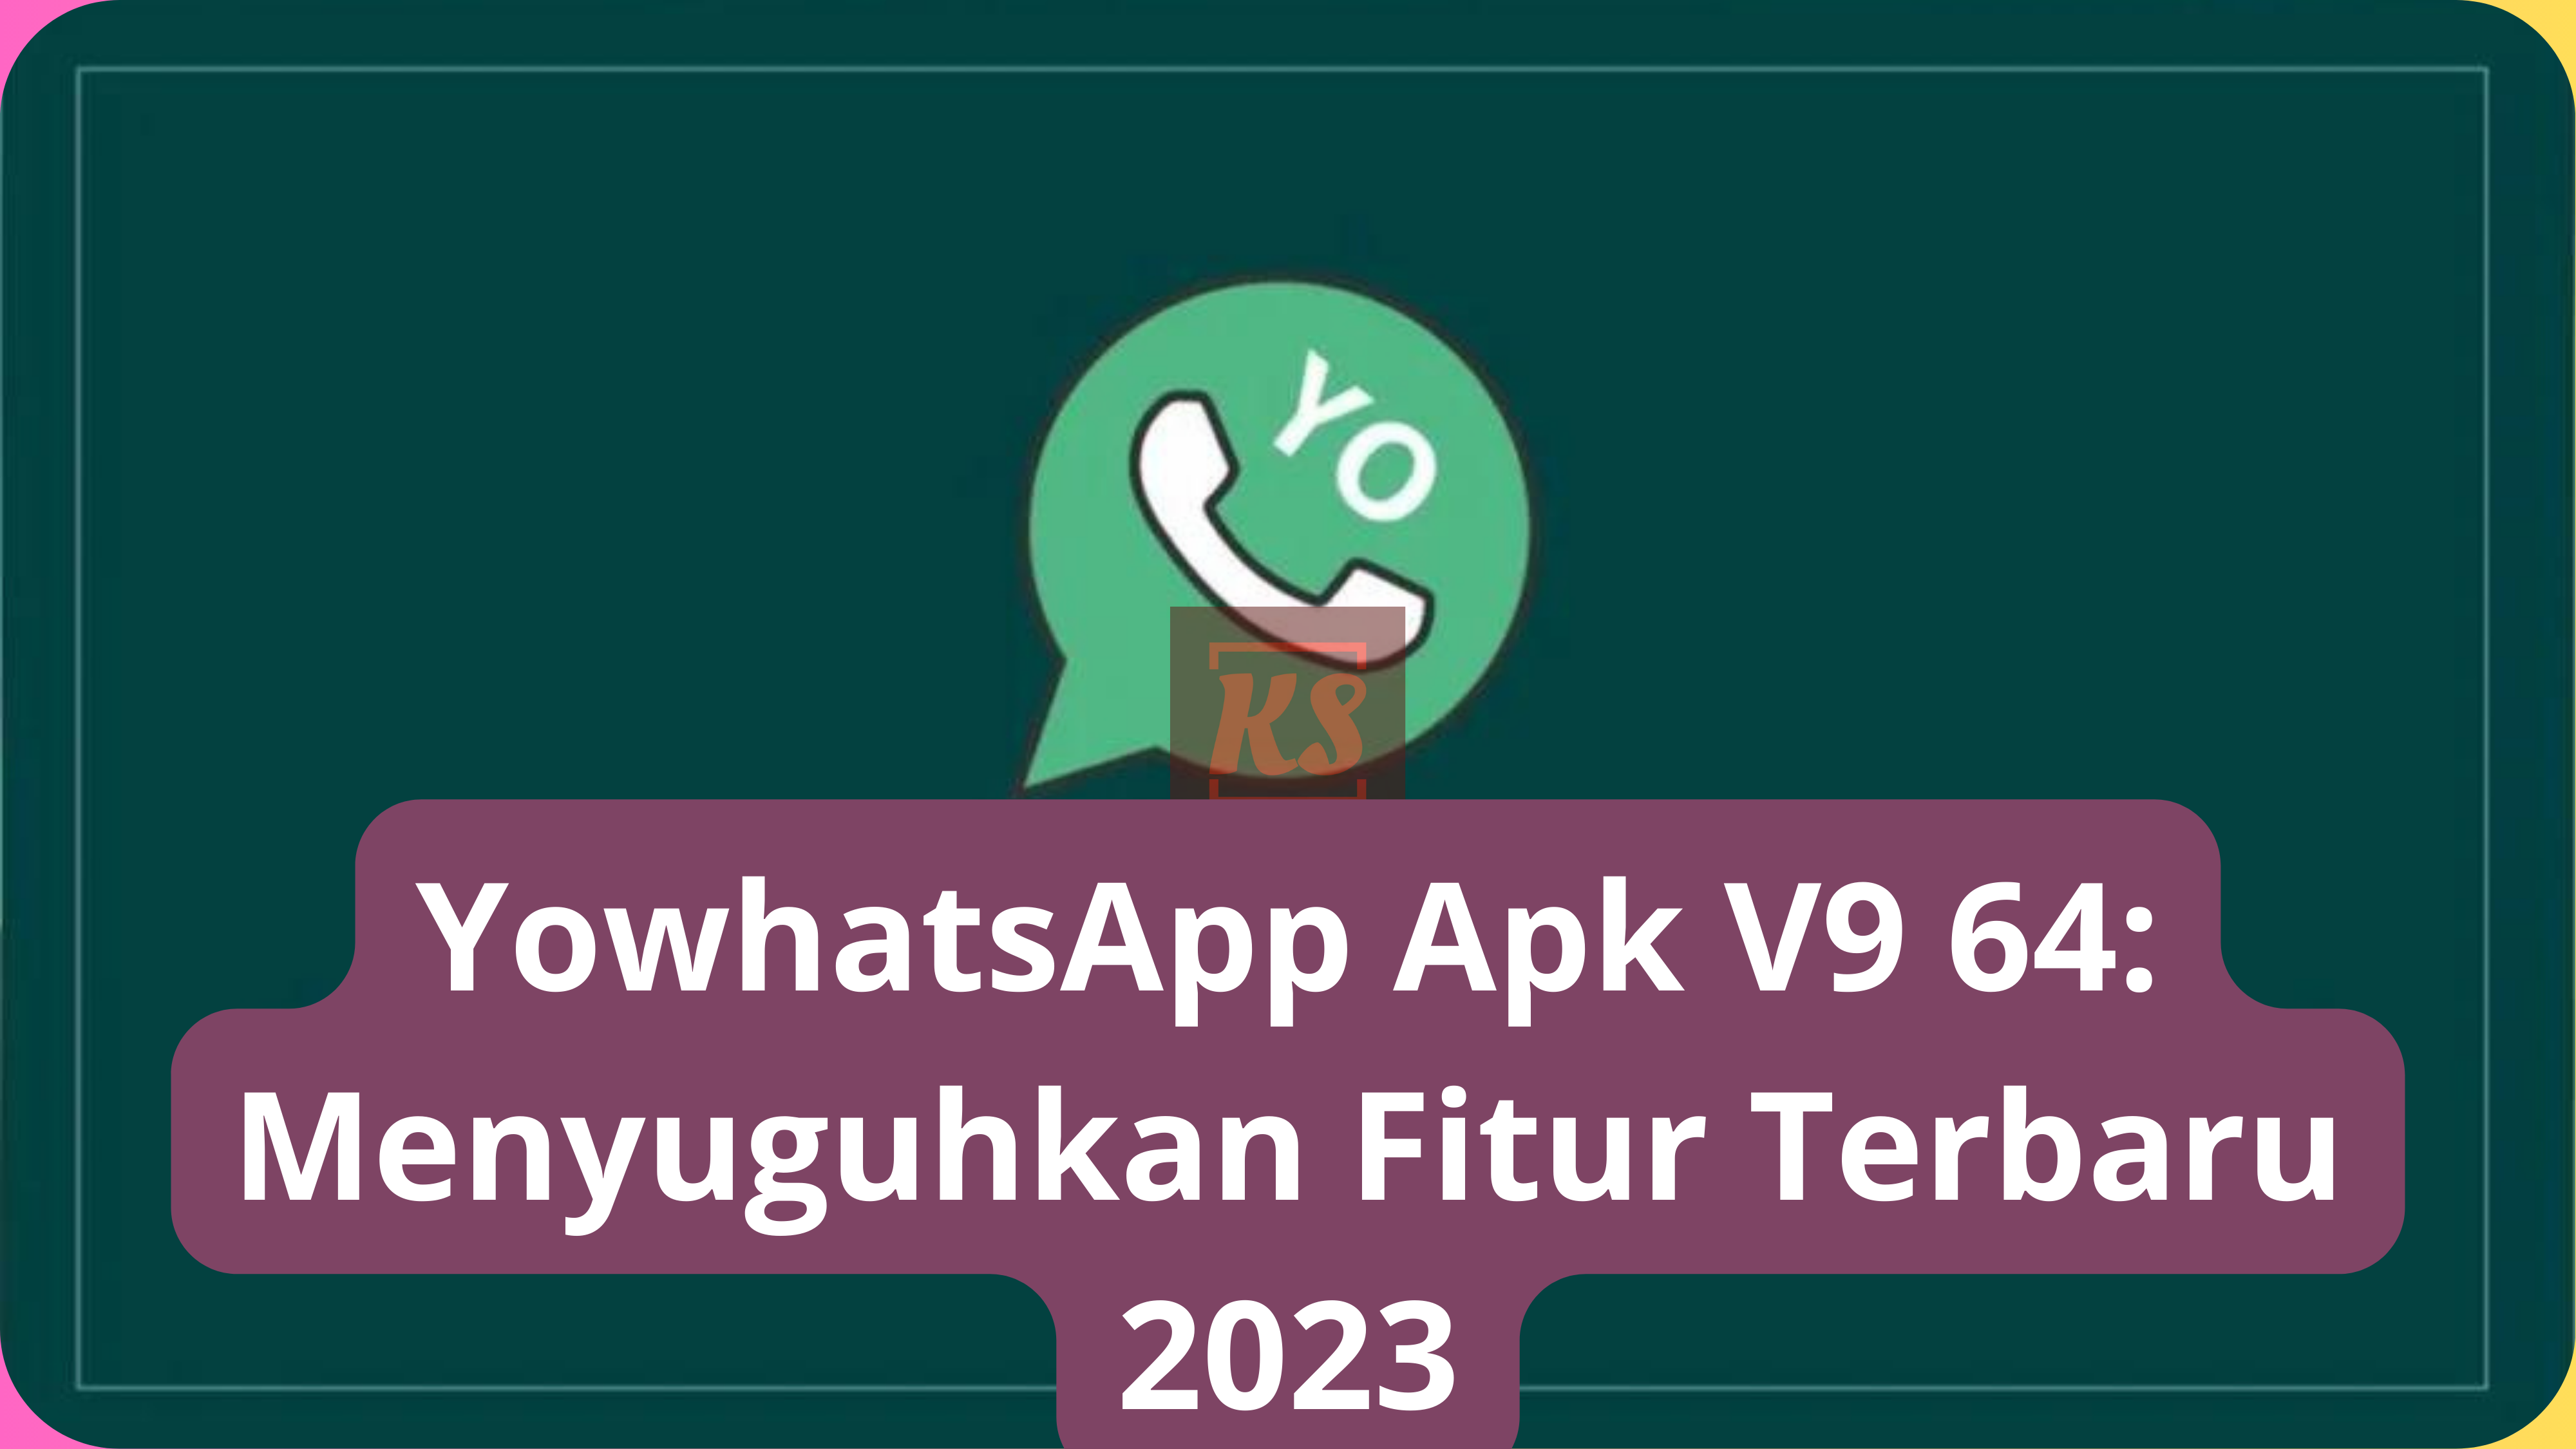 YowhatsApp Apk V9 64: Menyuguhkan Fitur Terbaru 2023